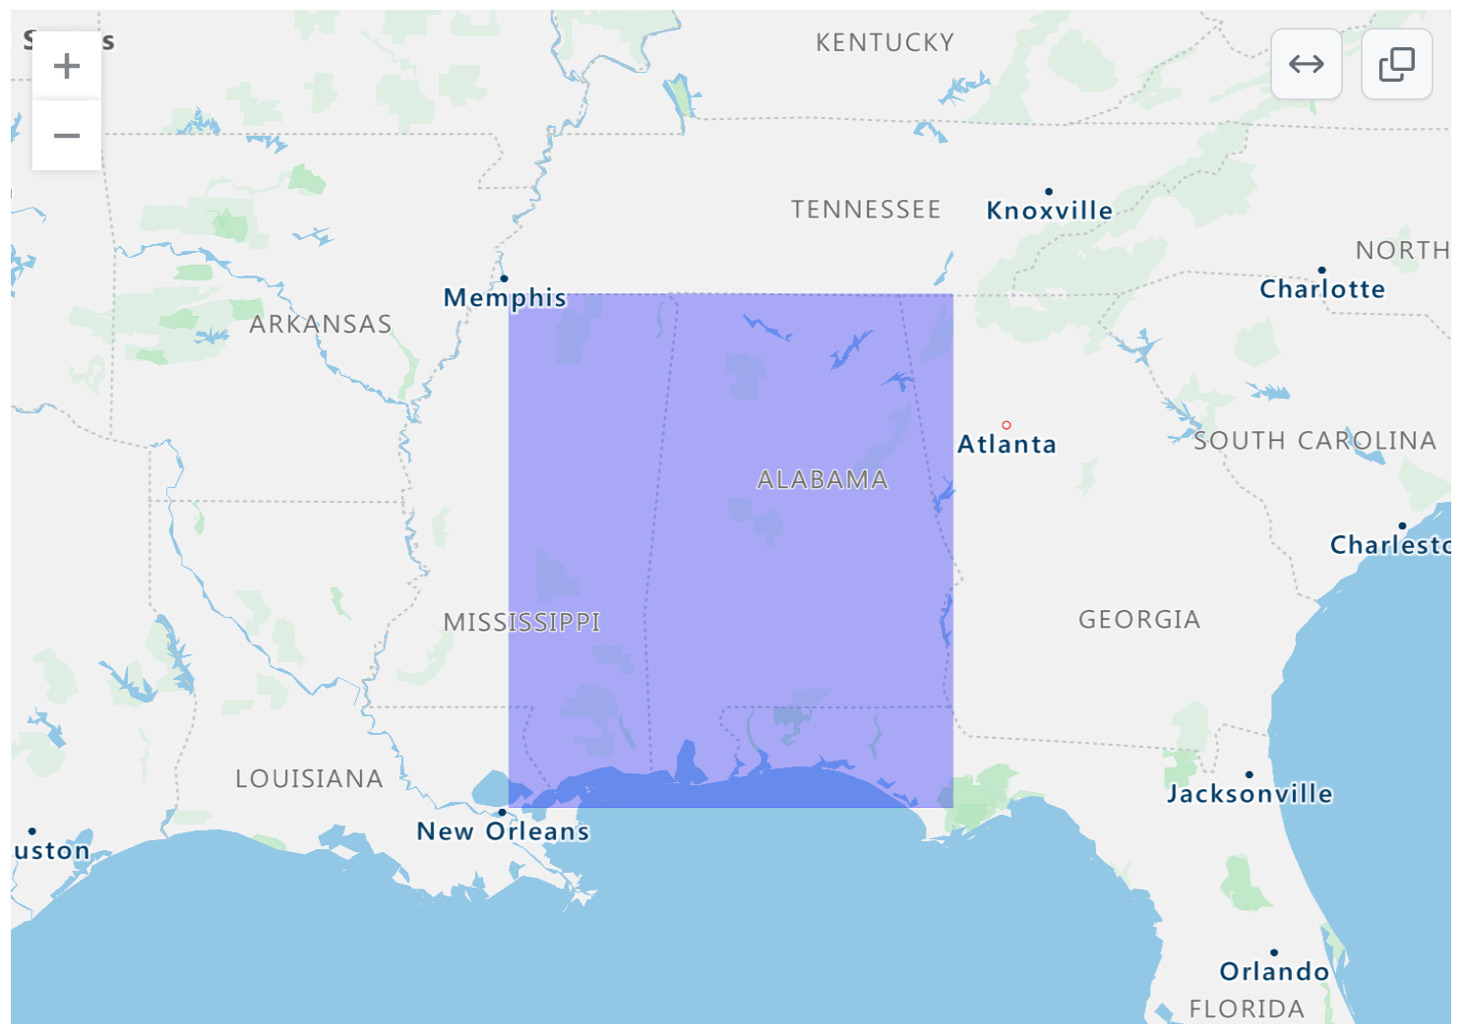 呈现的美国东南部的 GeoJSON 地图的屏幕截图，其中阿拉巴马州和密西西比州部分地区用紫色矩形覆盖。